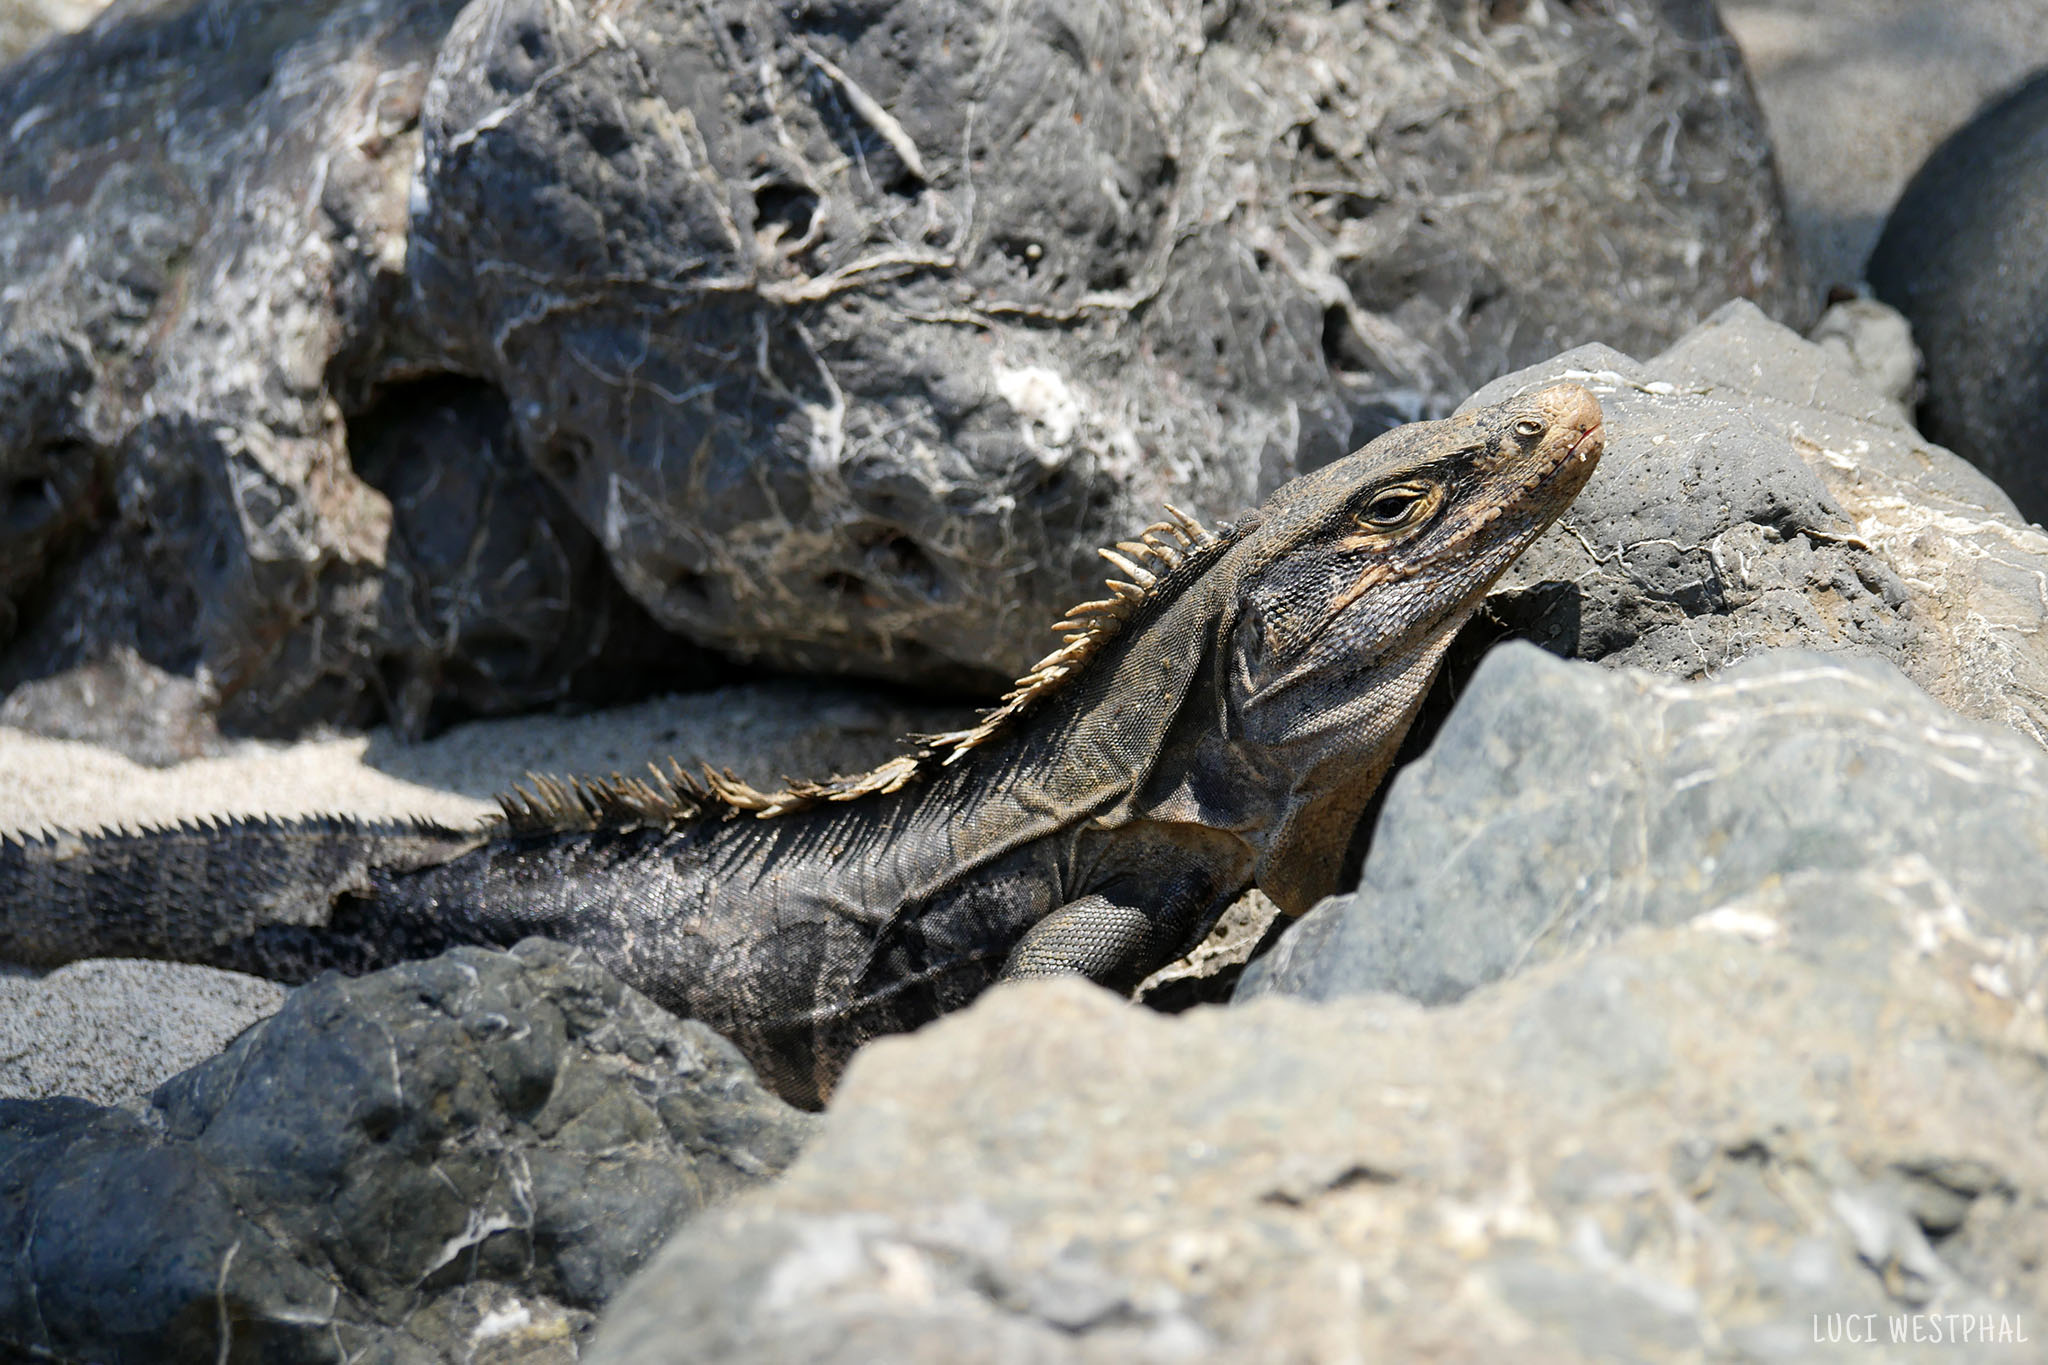 black spiny-tailed iguana, Black Ctenosaur, lined rocks, beach, Costa Rica